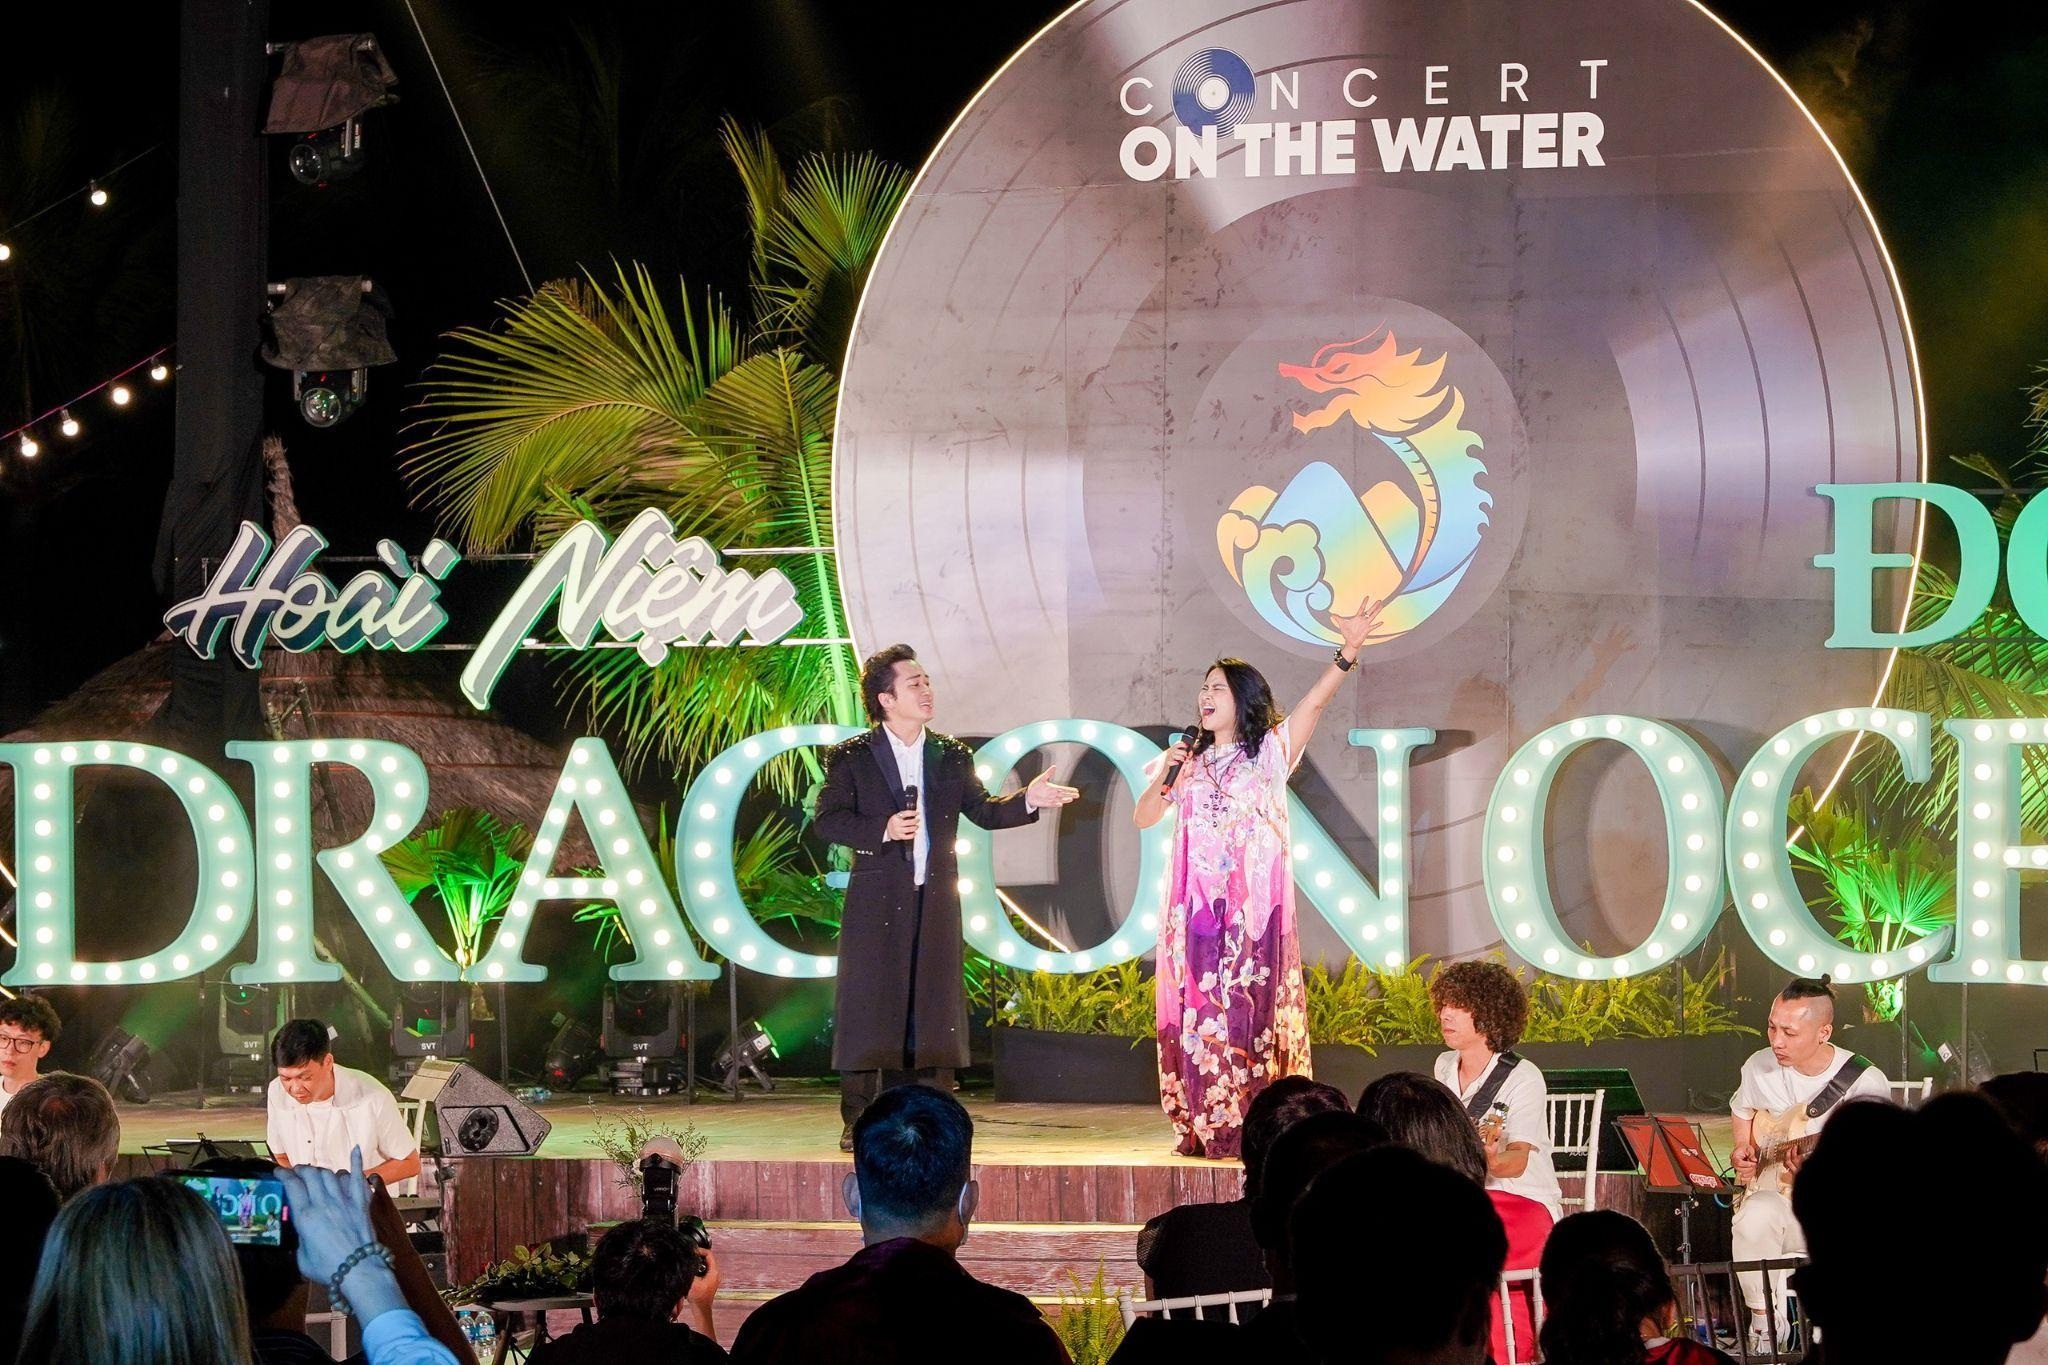 Tùng Dương phiêu cùng đêm nhạc Hoài niệm tại Dragon Beach Đồ Sơn - 6